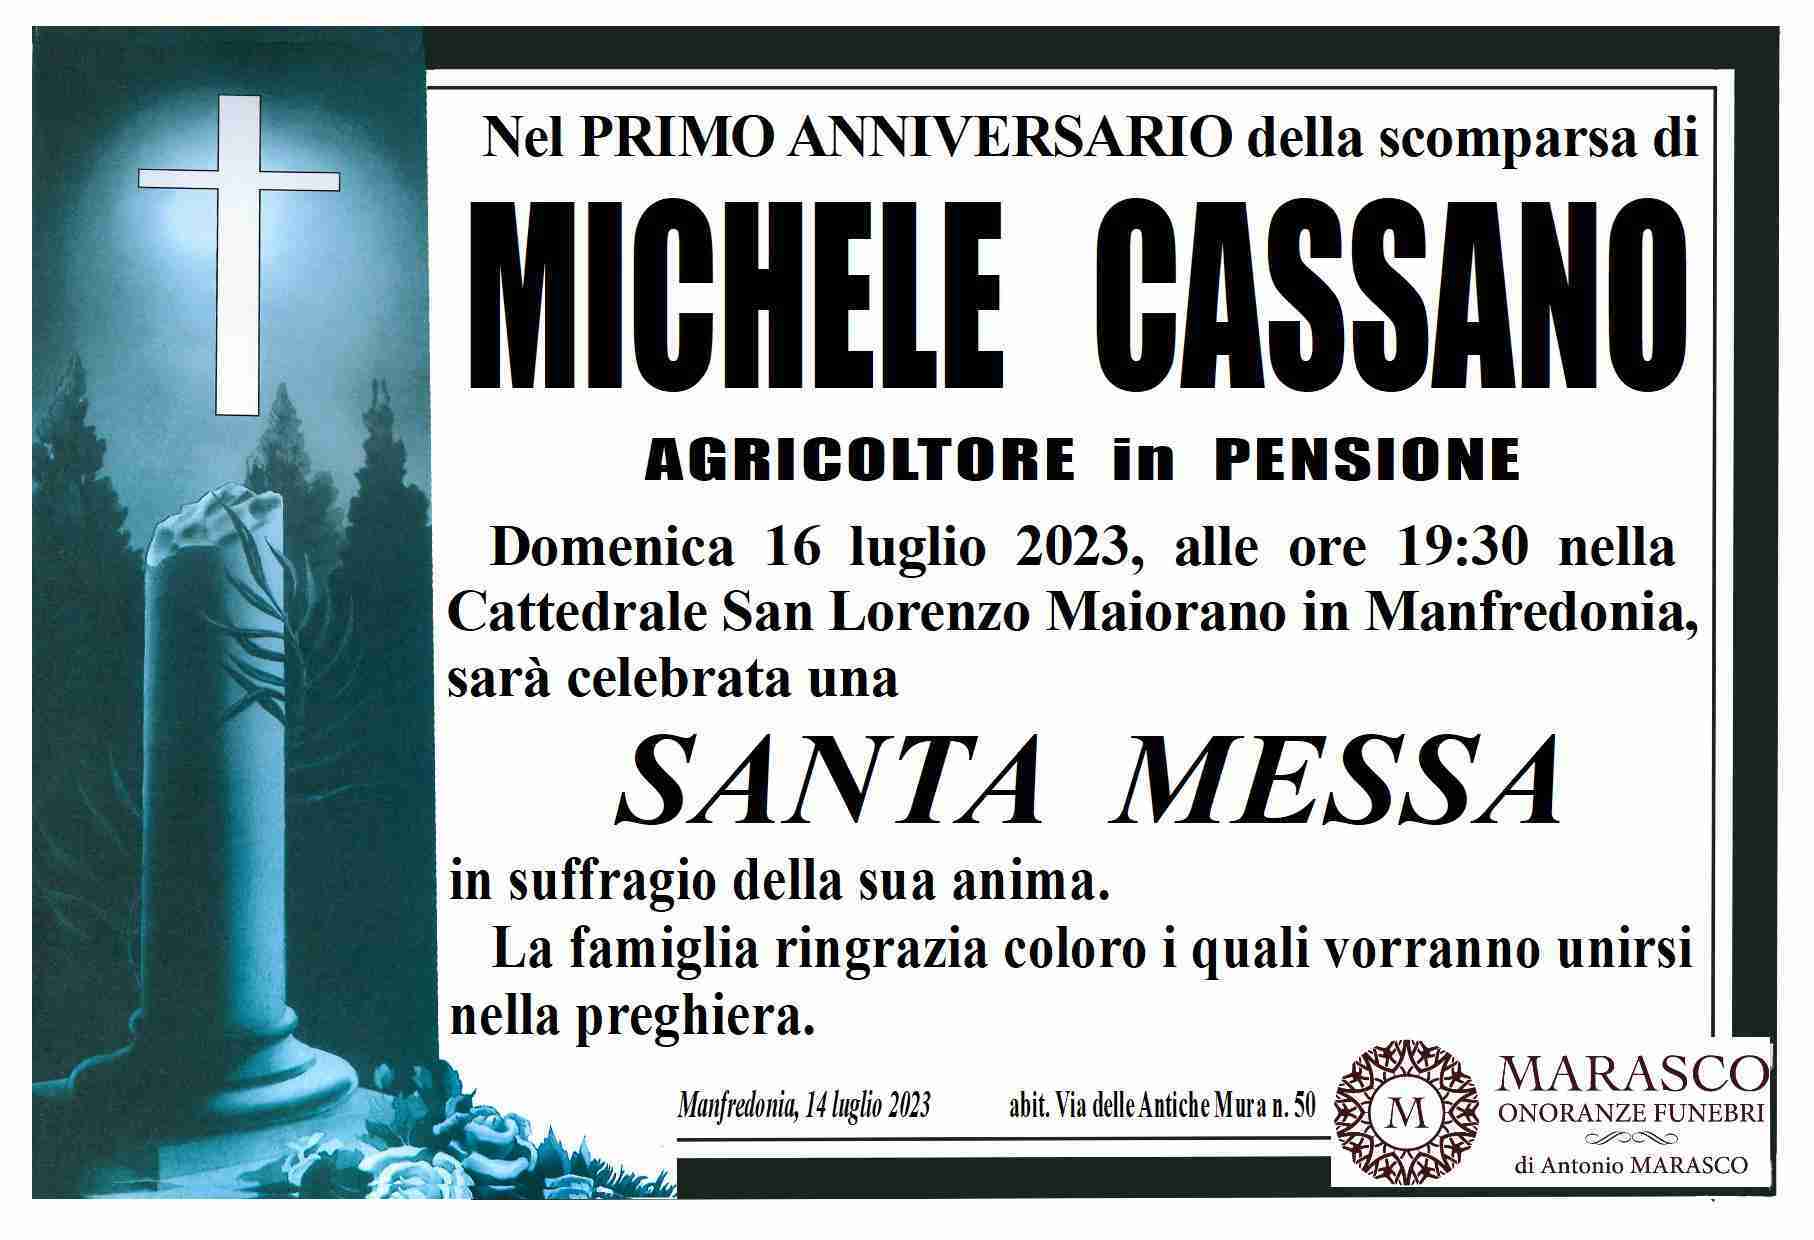 Michele Cassano